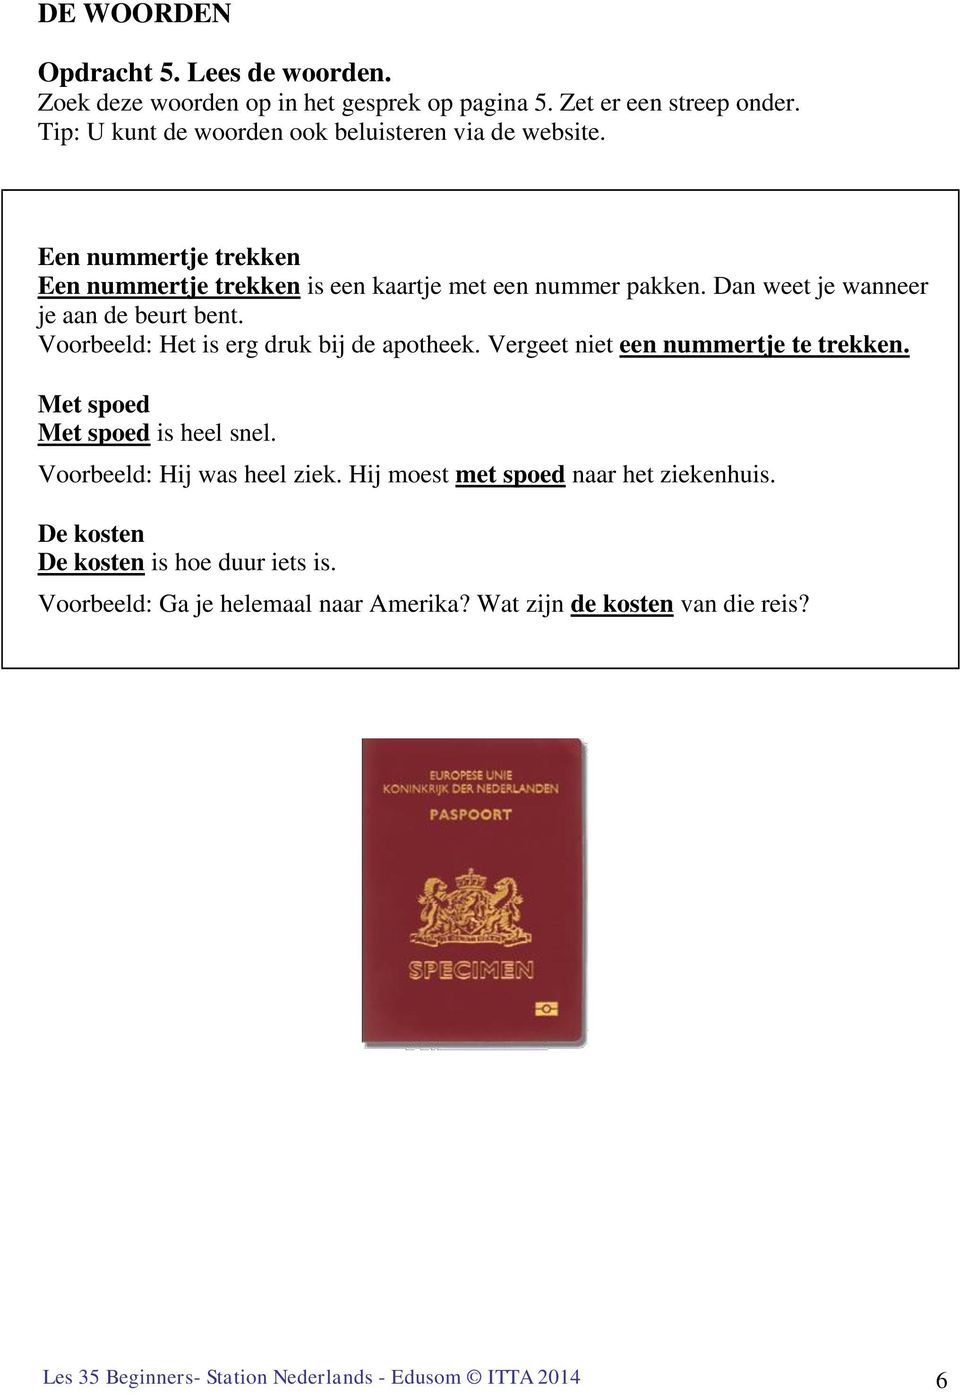 Les 20. Een nieuw paspoort   PDF Free Download